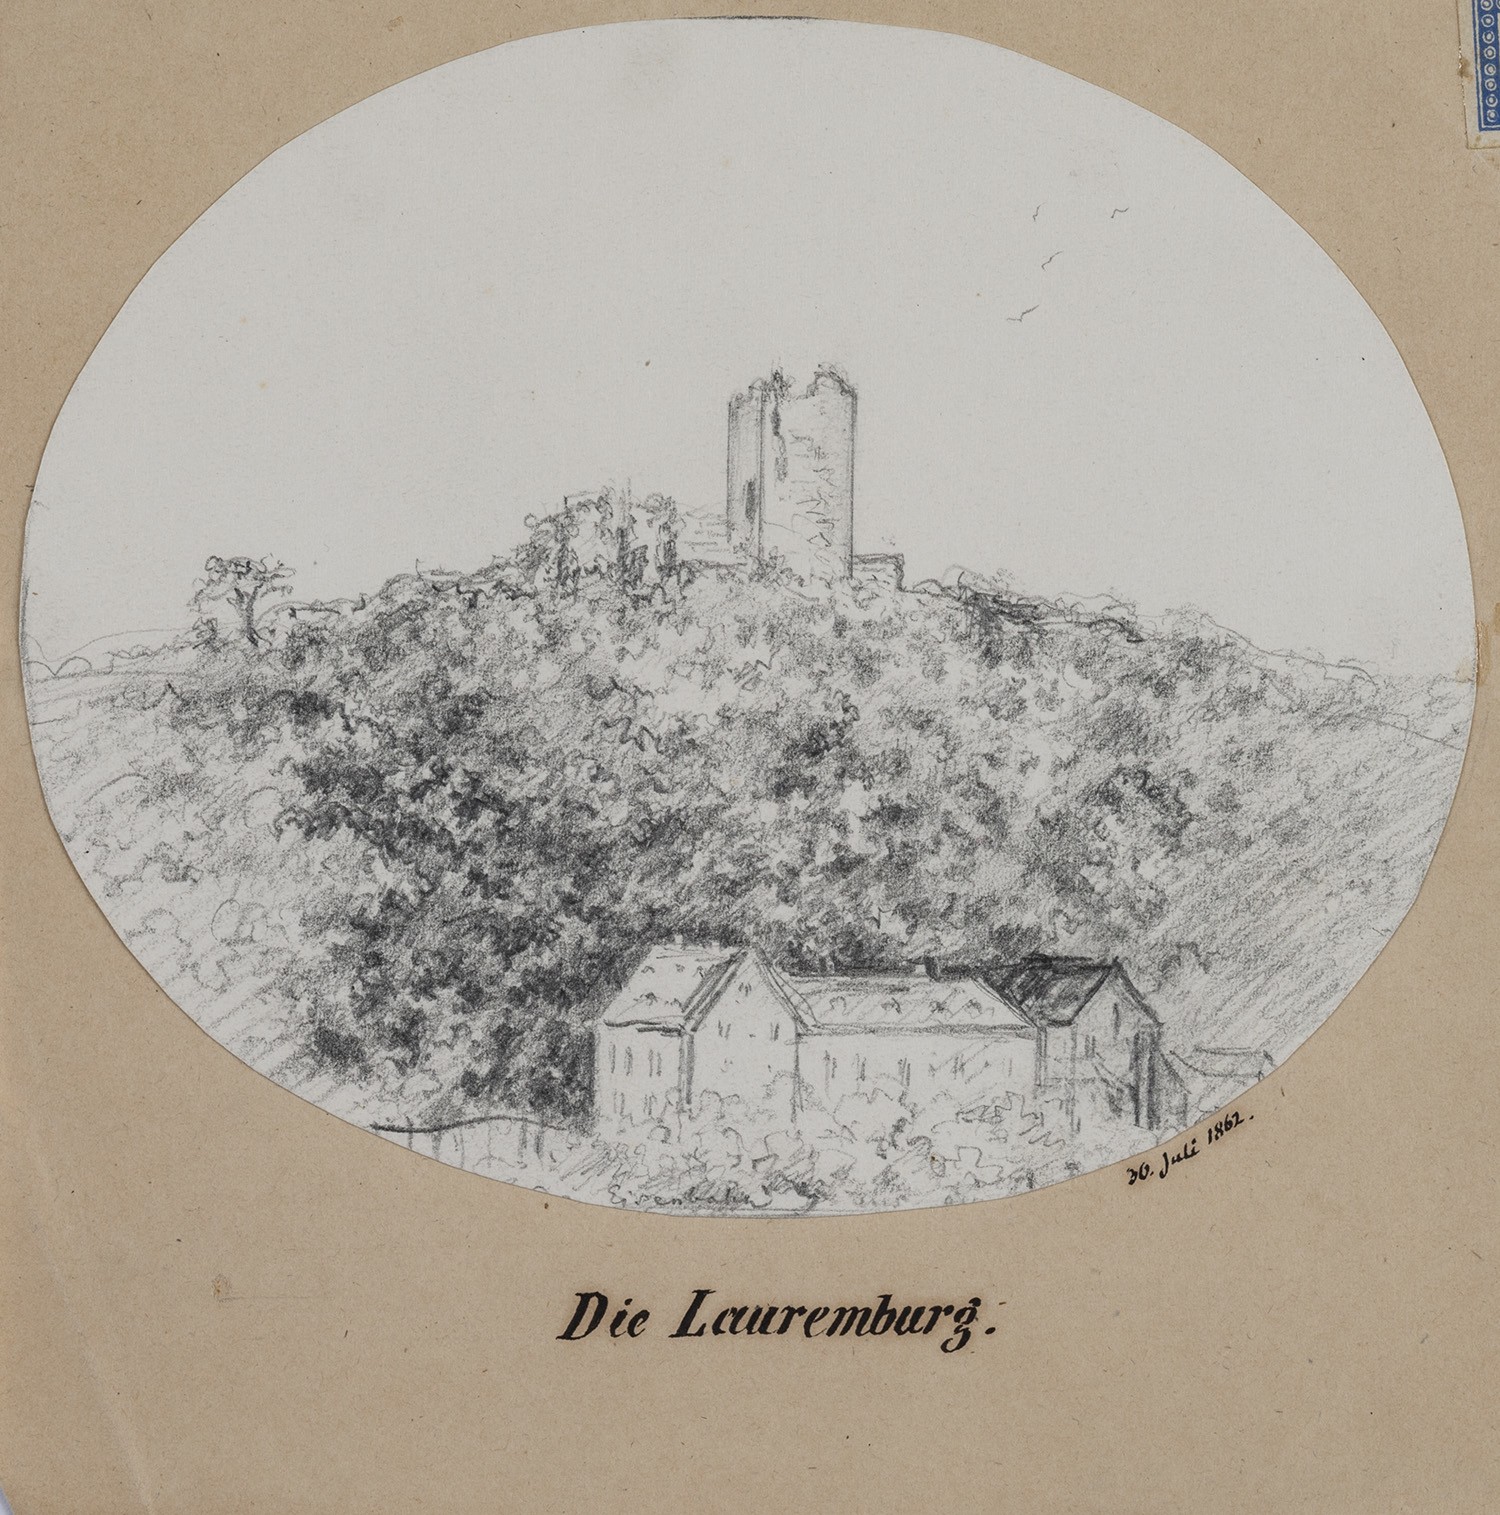 Laurenburg (Rheinland-Pfalz): Burgruine (Landesgeschichtliche Vereinigung für die Mark Brandenburg e.V., Archiv CC BY)